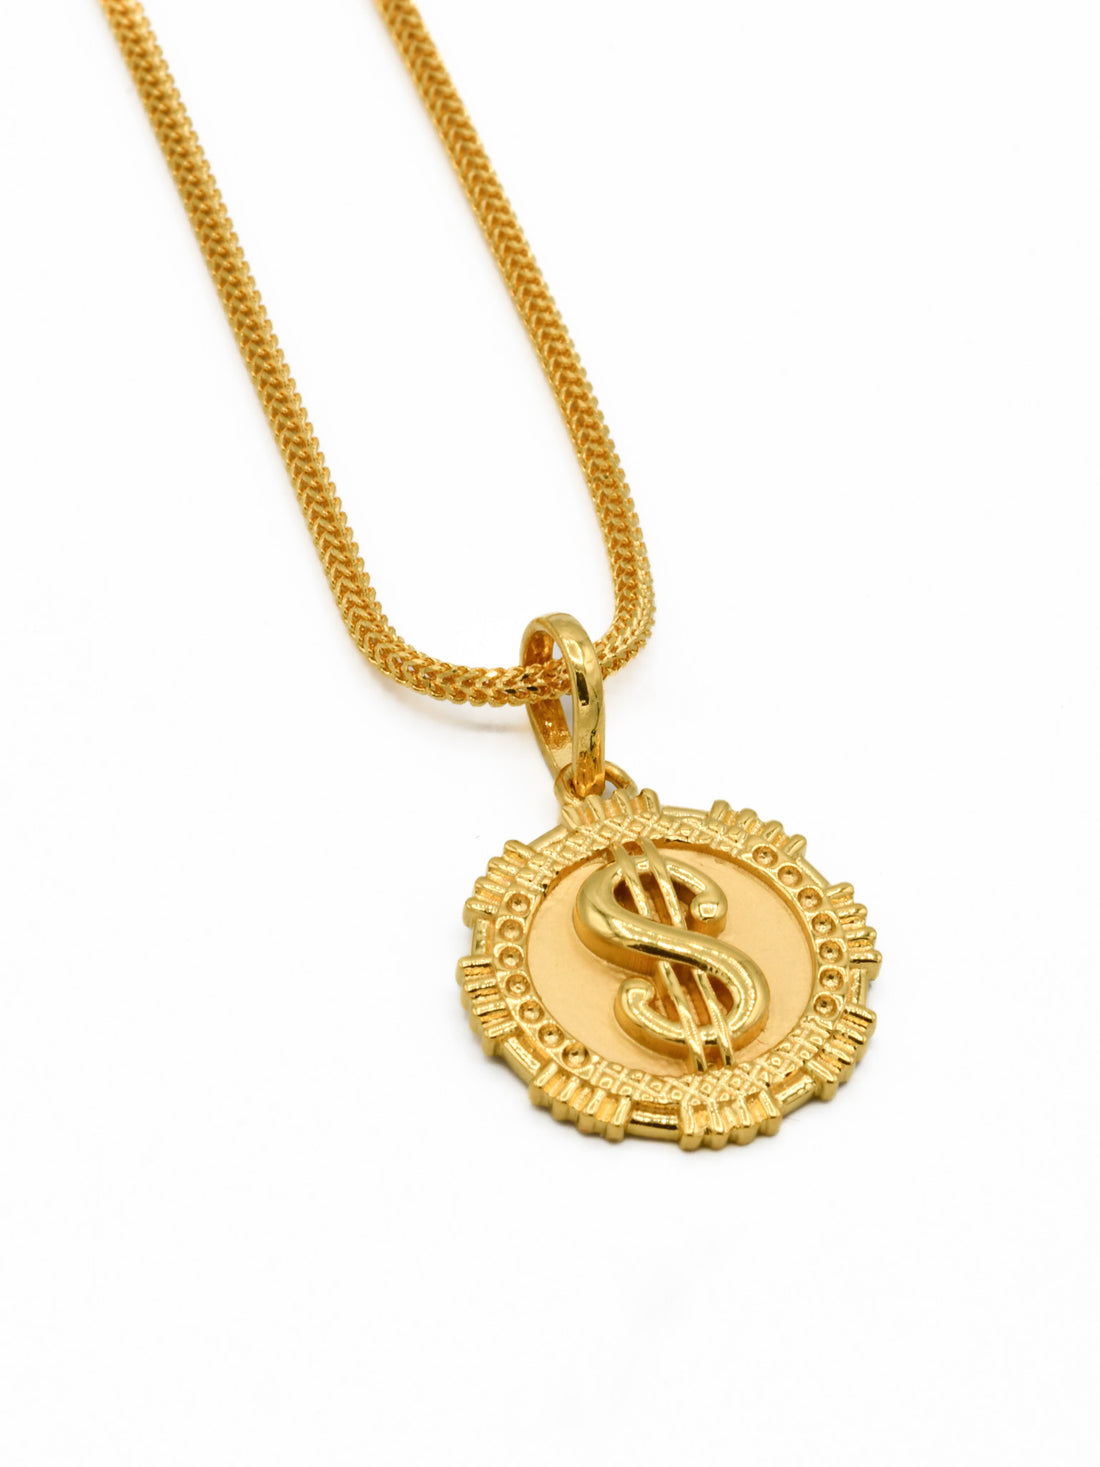 22ct Gold Dollar Symbol Pendant - Roop Darshan